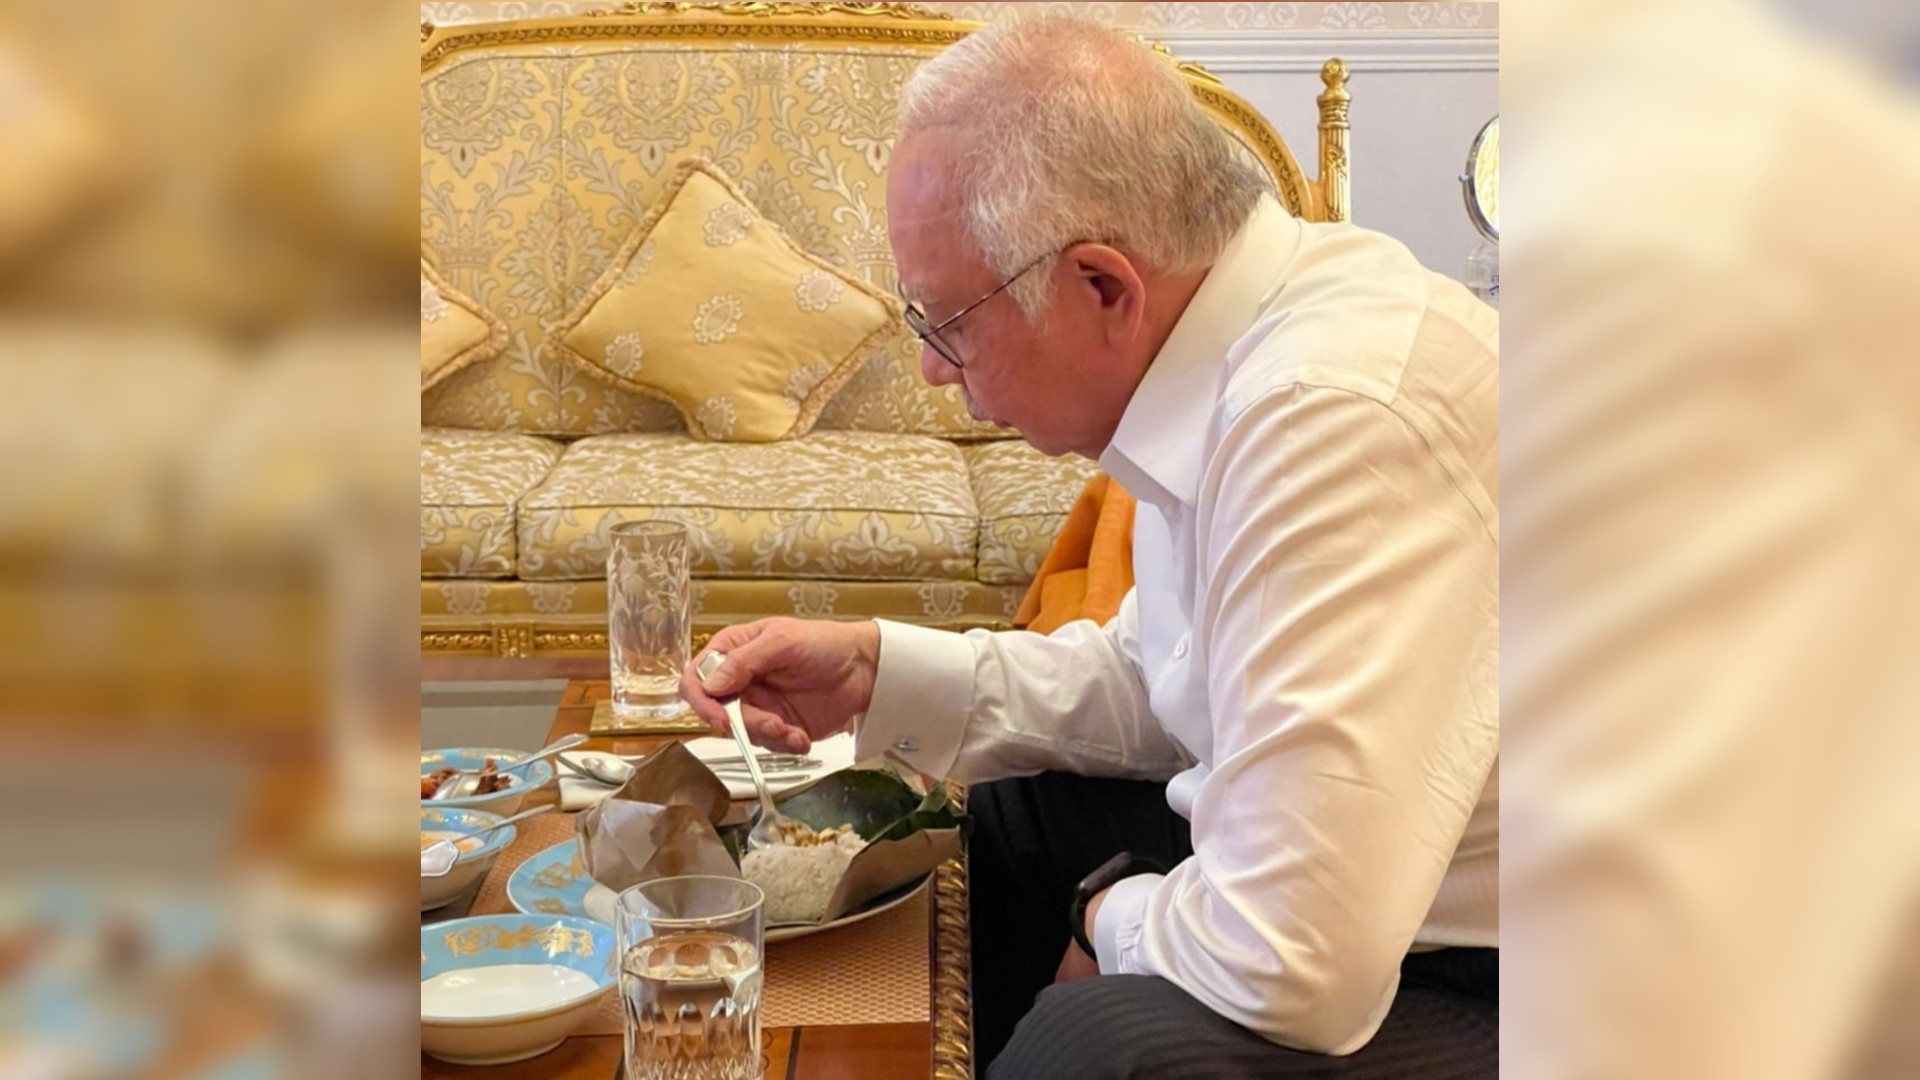 Najib Razak eating lunch before going to court on Aug. 19, 2021. Photo: Najib Razak/Facebook